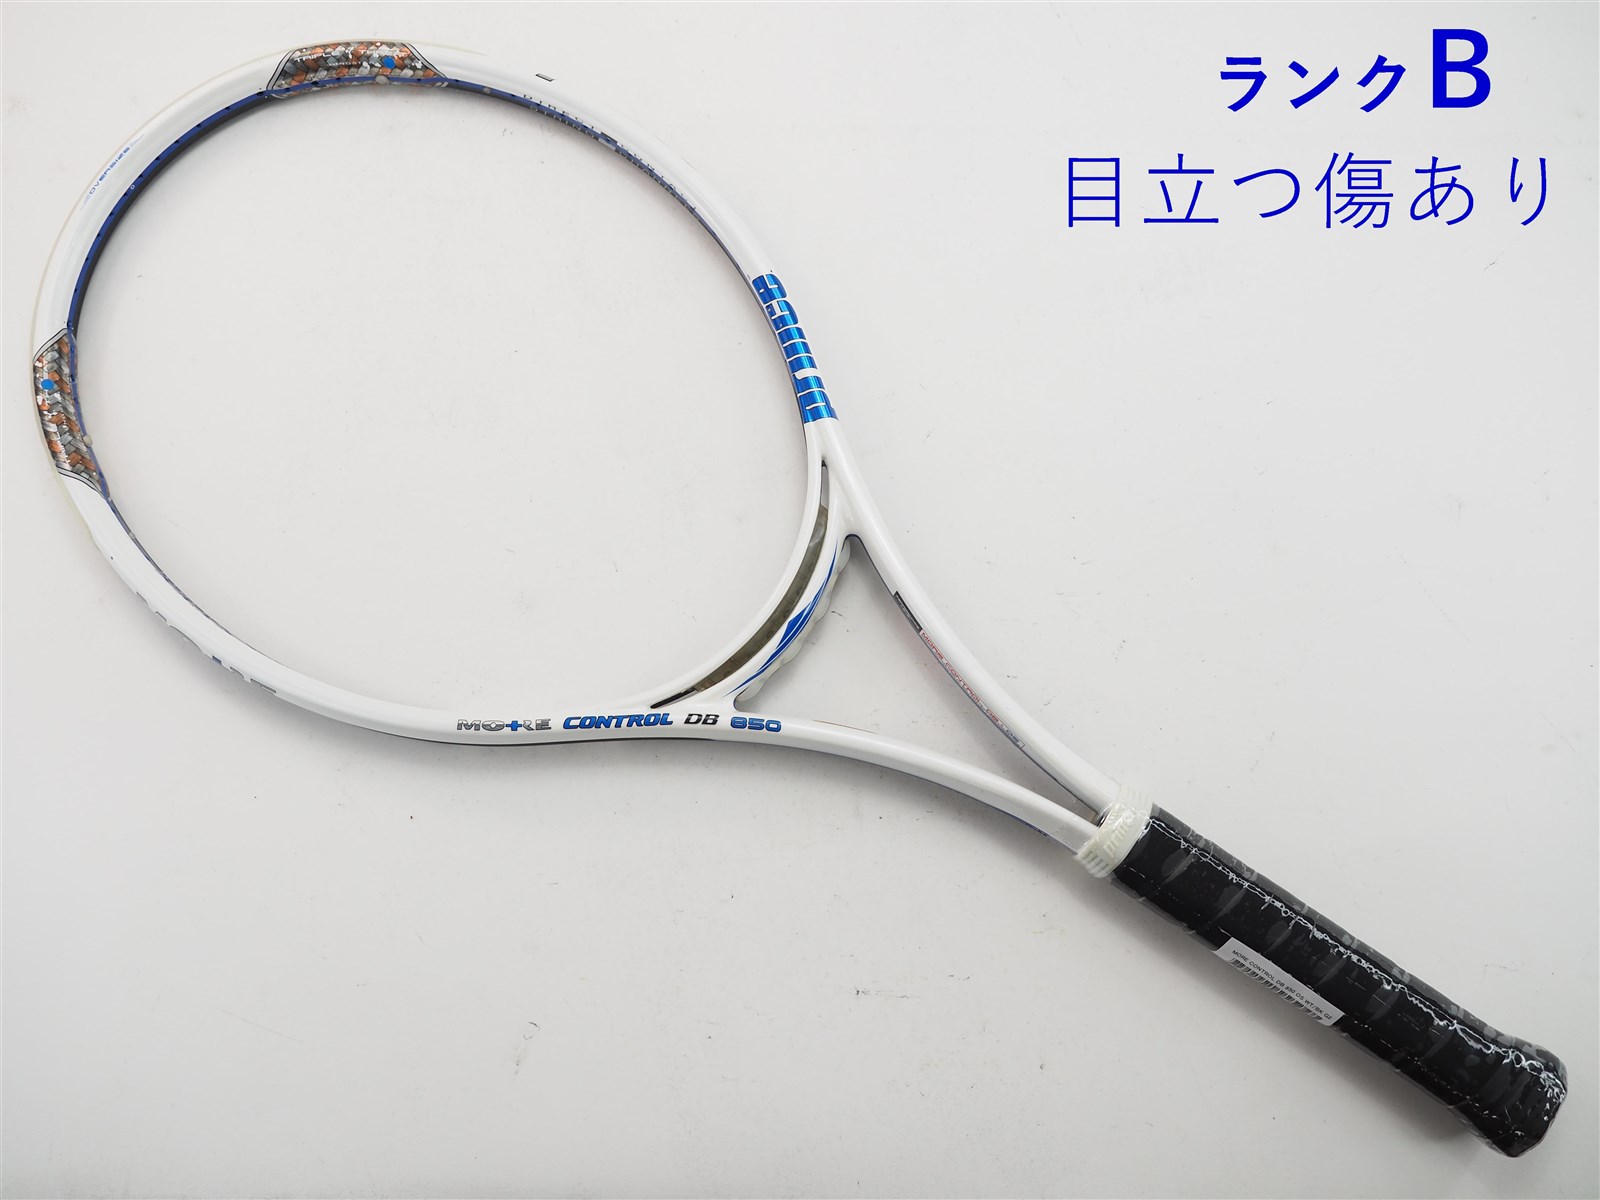 テニスラケット プリンス モア コントロール DB 850 OS (G2)PRINCE MORE CONTROL DB 850 OS元グリップ交換済み付属品